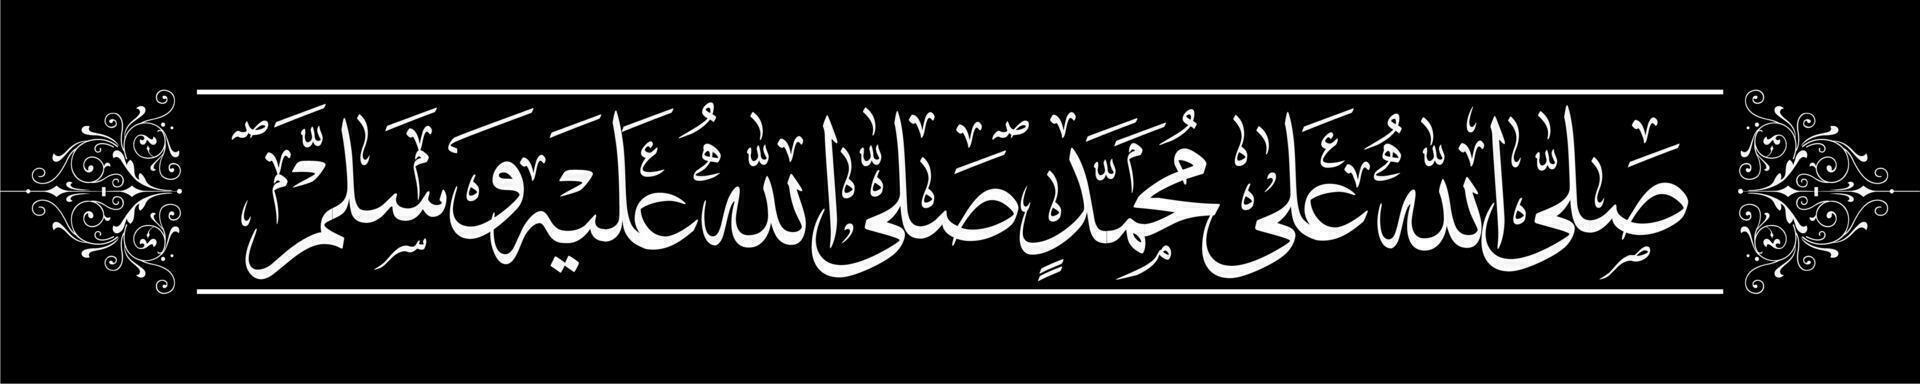 Arabisch Kalligraphie, Übersetzung Gnade auf das Prophet Muhammad und Gnade und Heil auf das Prophet vektor